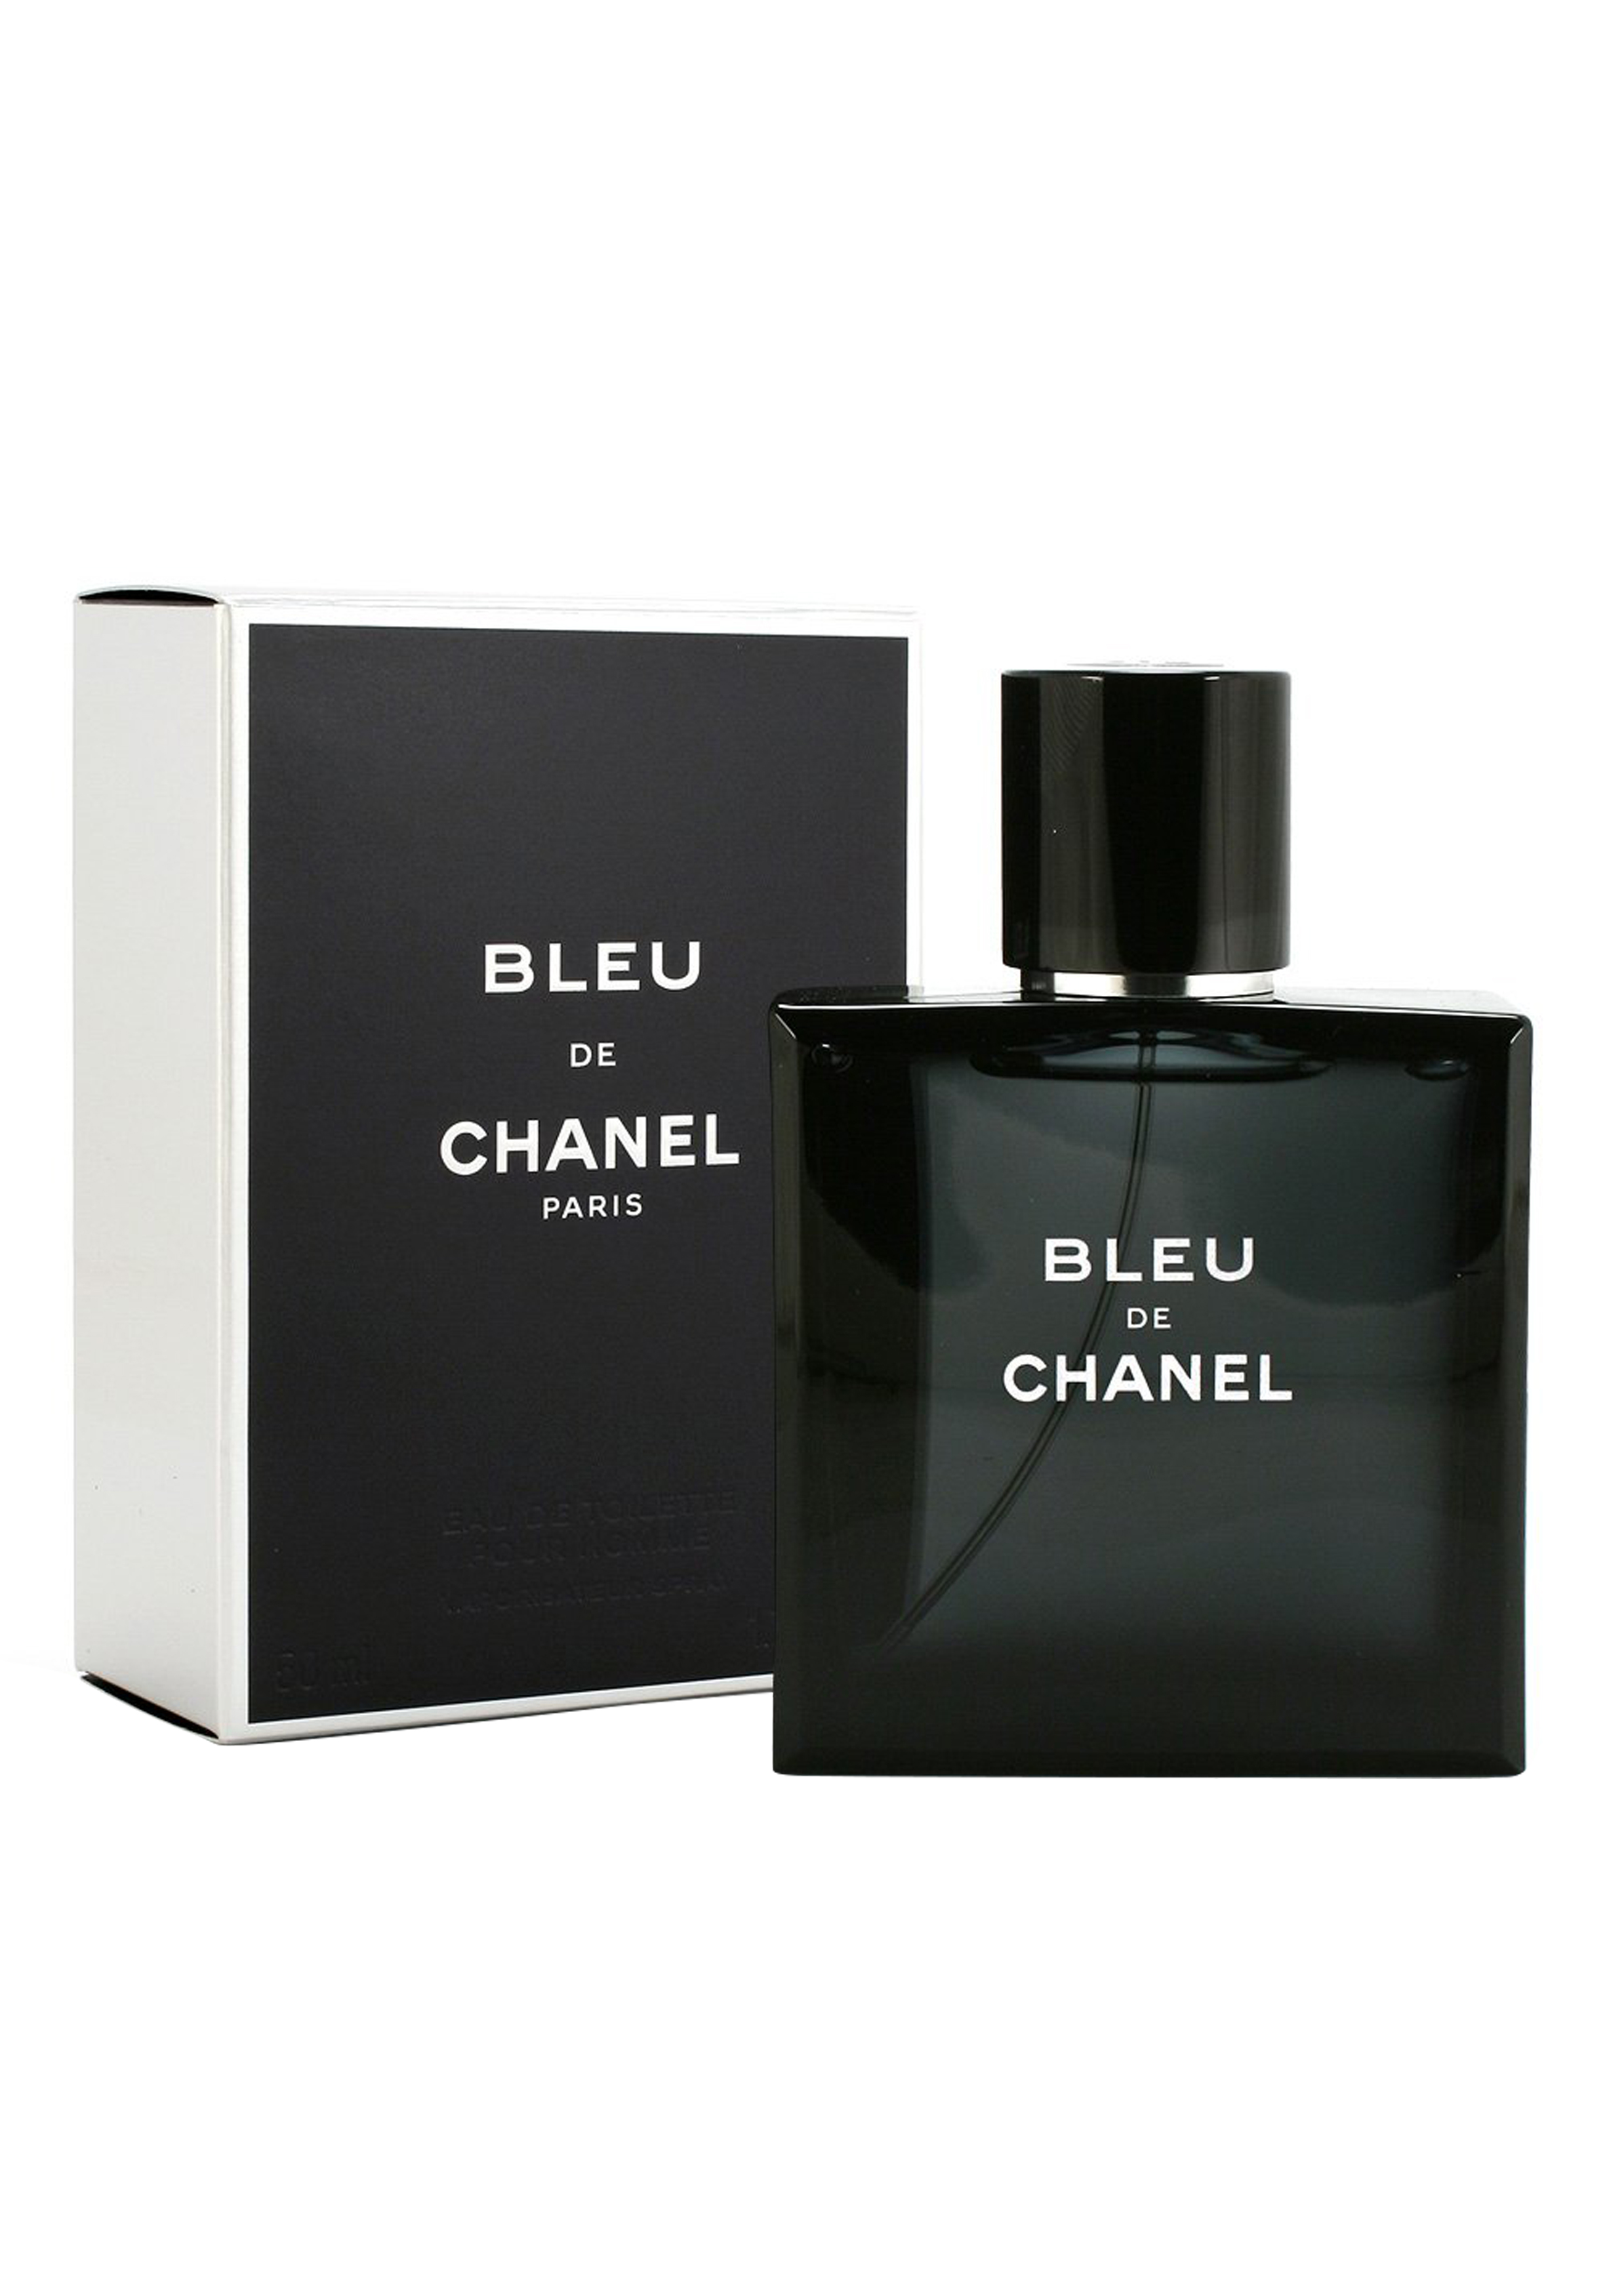 Imperialisme stoom Kiwi Heren parfum Chanel, Bleu De Chanel For Men, Eau de Toilette 150ml spray -  Shop de nieuwste voorjaarsmode